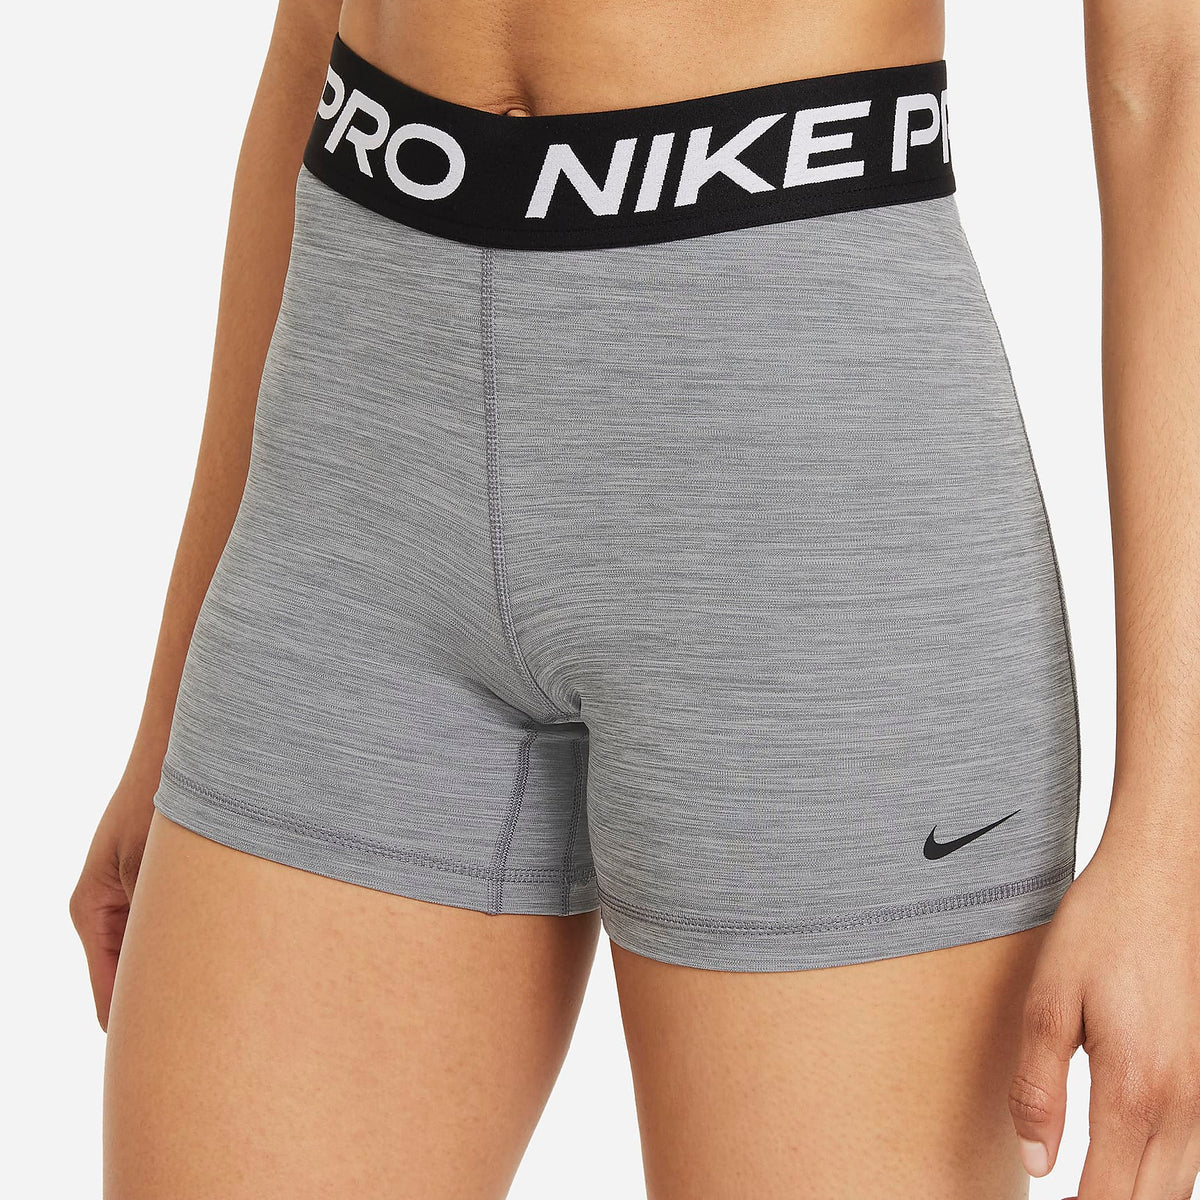  Nike Pro Shorts Smoke Grey/Light Smoke Grey/Black MD